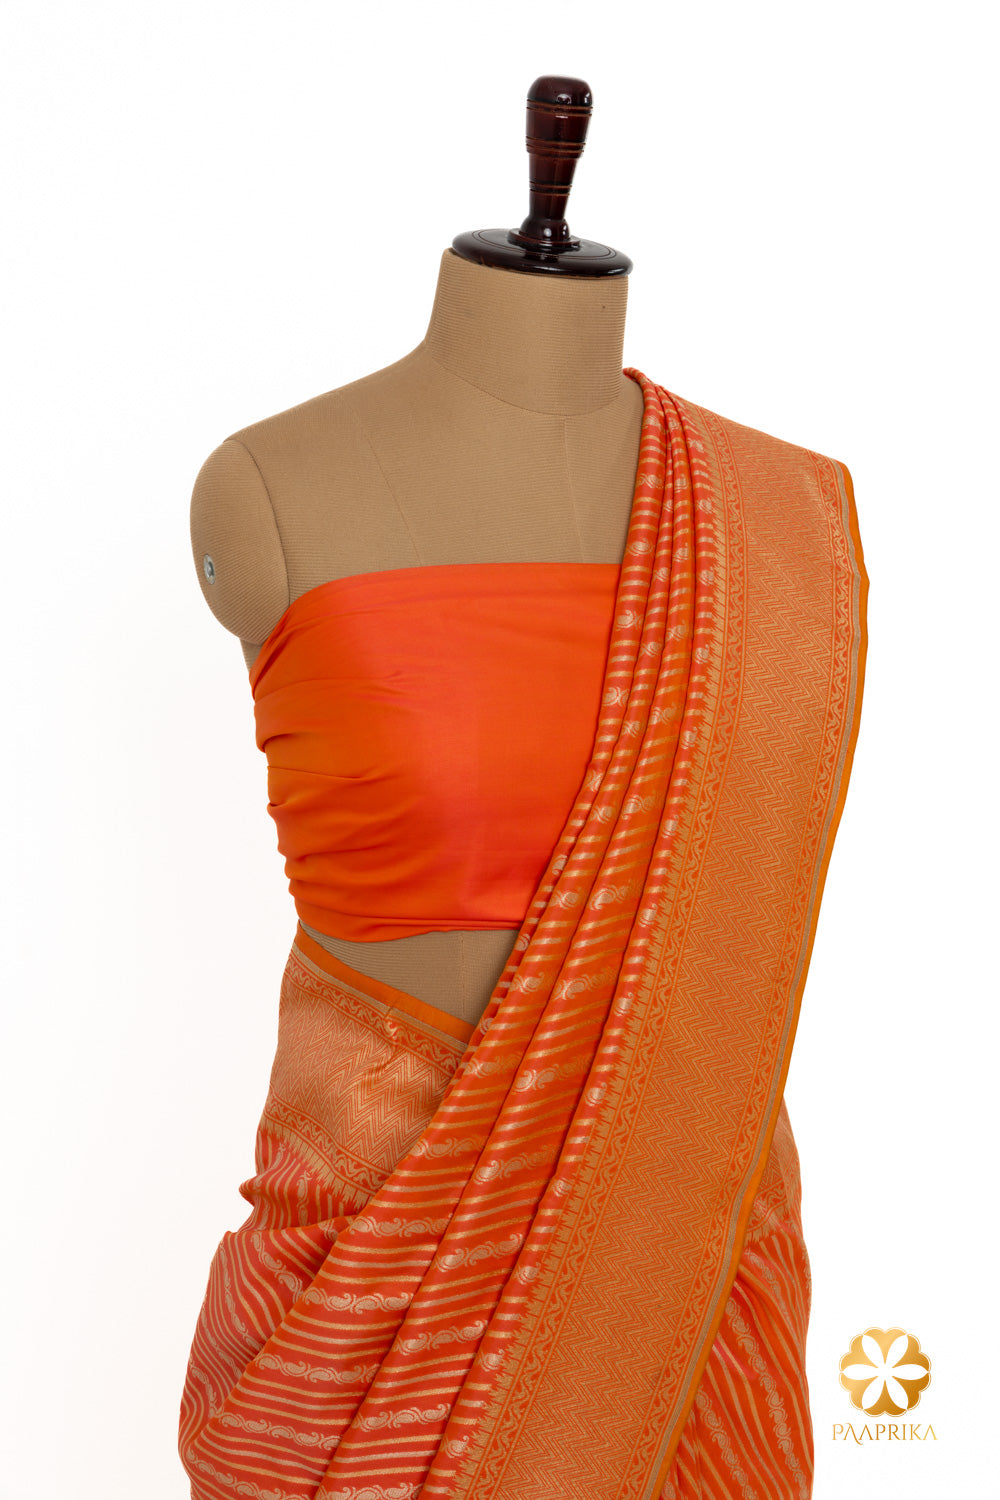 Vibrant orange Banarasi saree exuding energy and style.